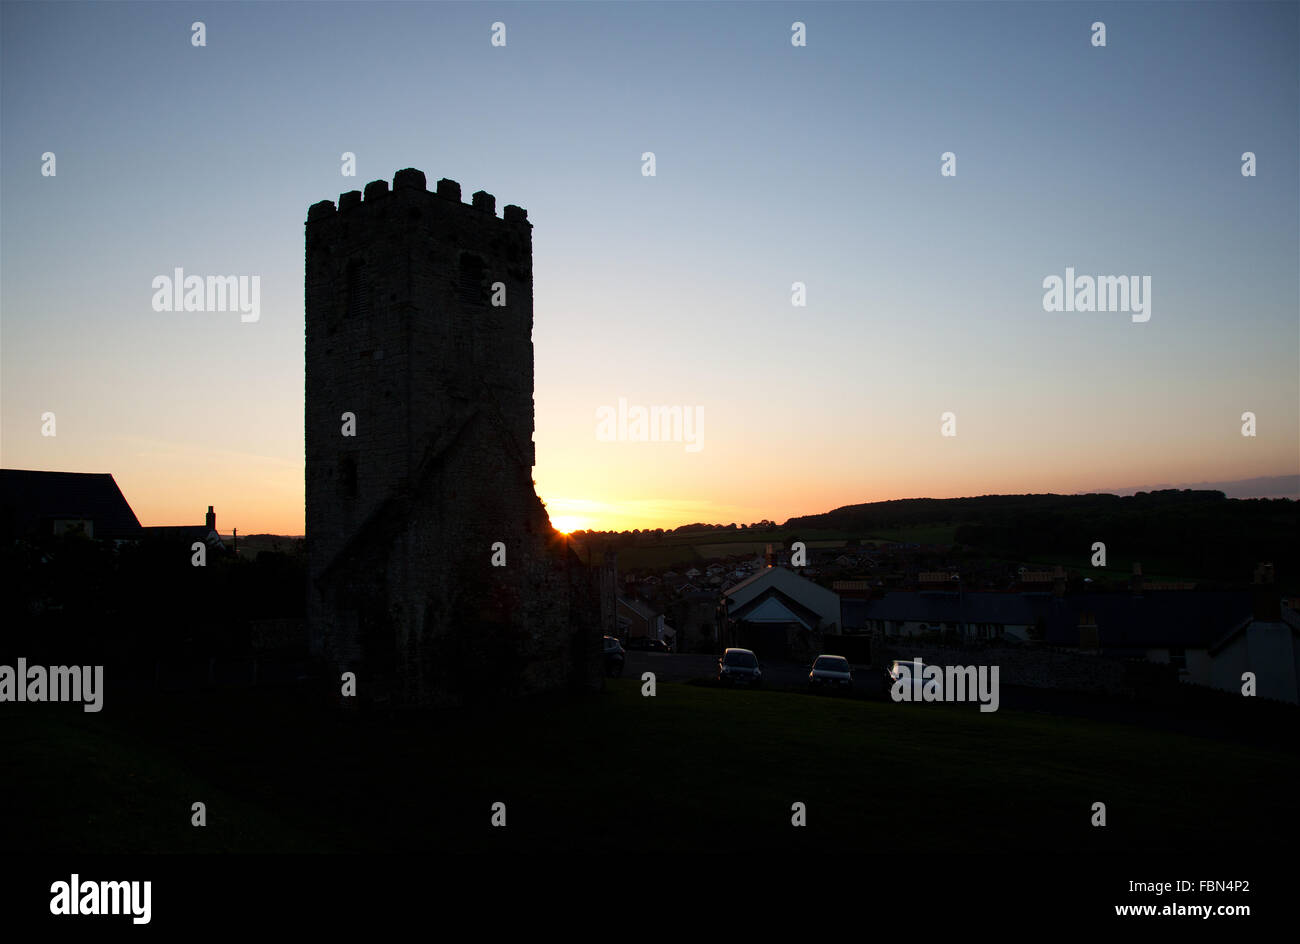 Foto von Jamie Callister ©. Sonnenuntergang in Denbigh Castle, Denbighshire, North Wales, 18. Juni 2015. Stockfoto